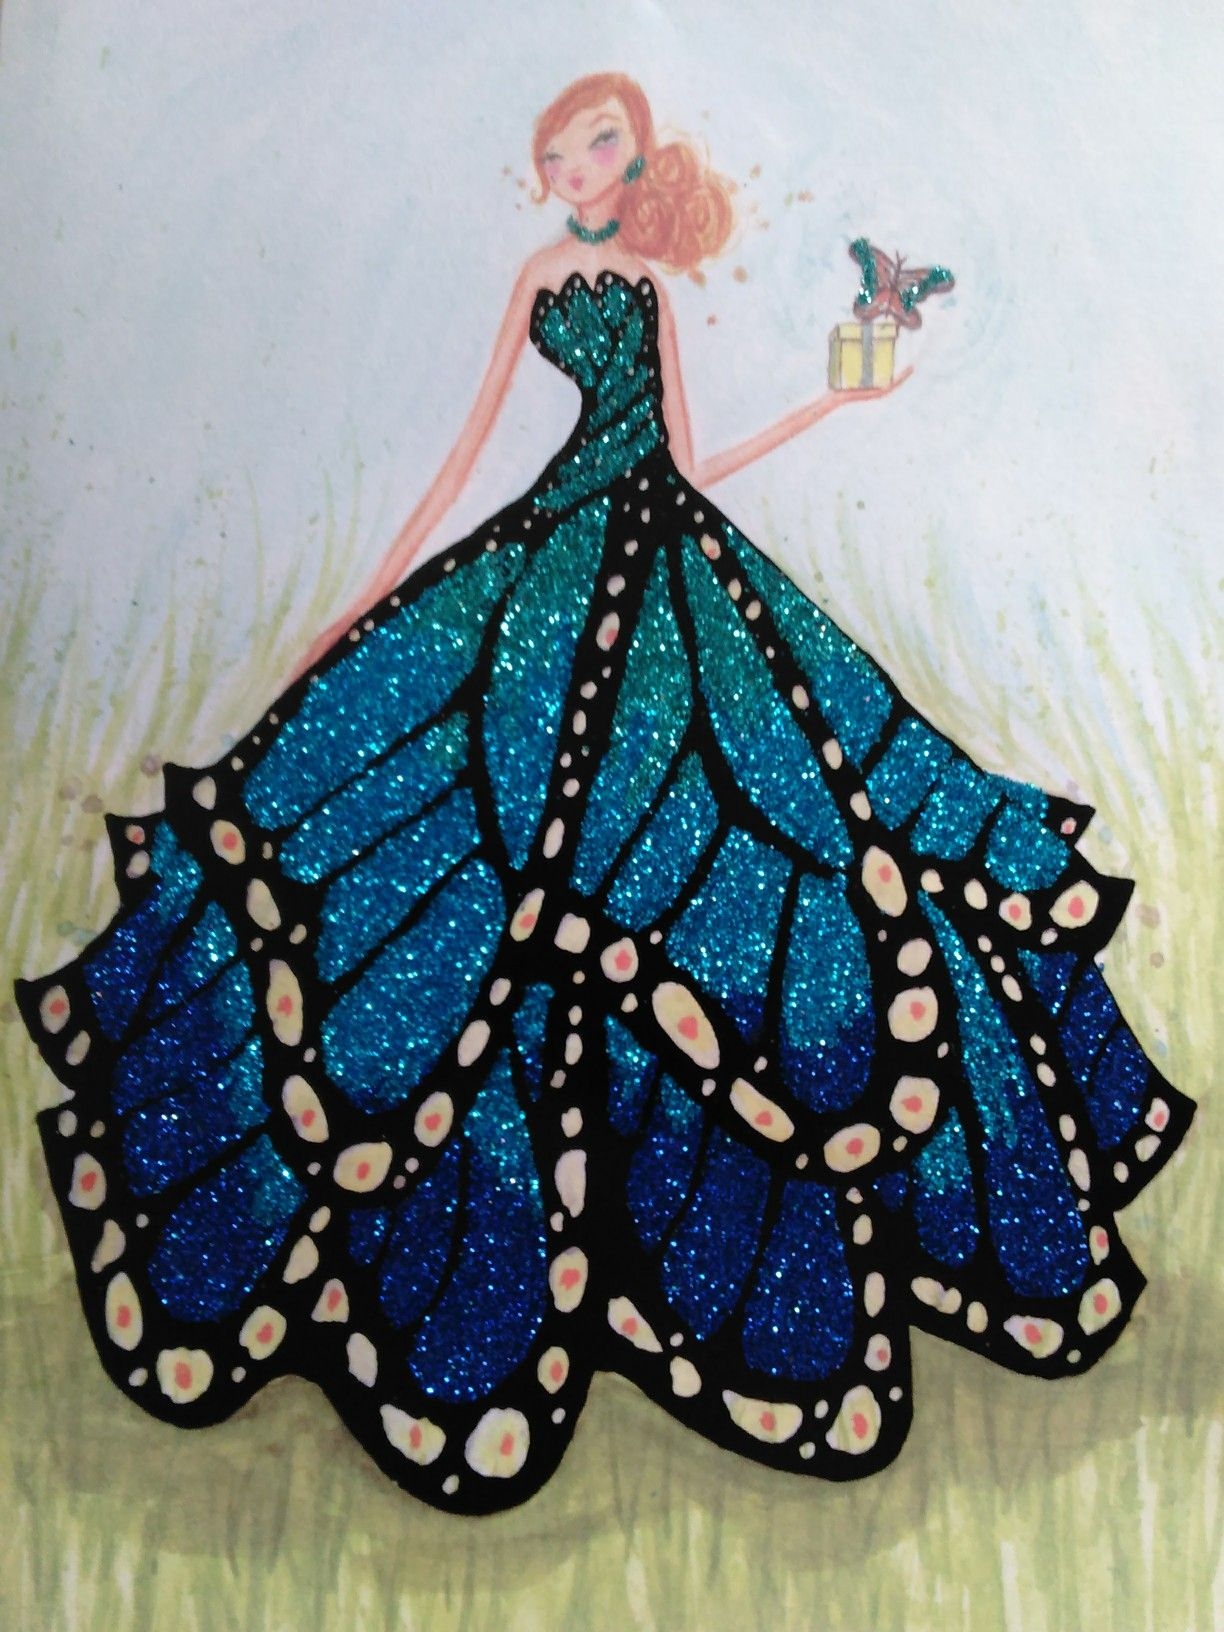 Бабочки на вашем платье - к счастью и процветанию | Быть женщиной, Модельеры, Платье с вышивкой